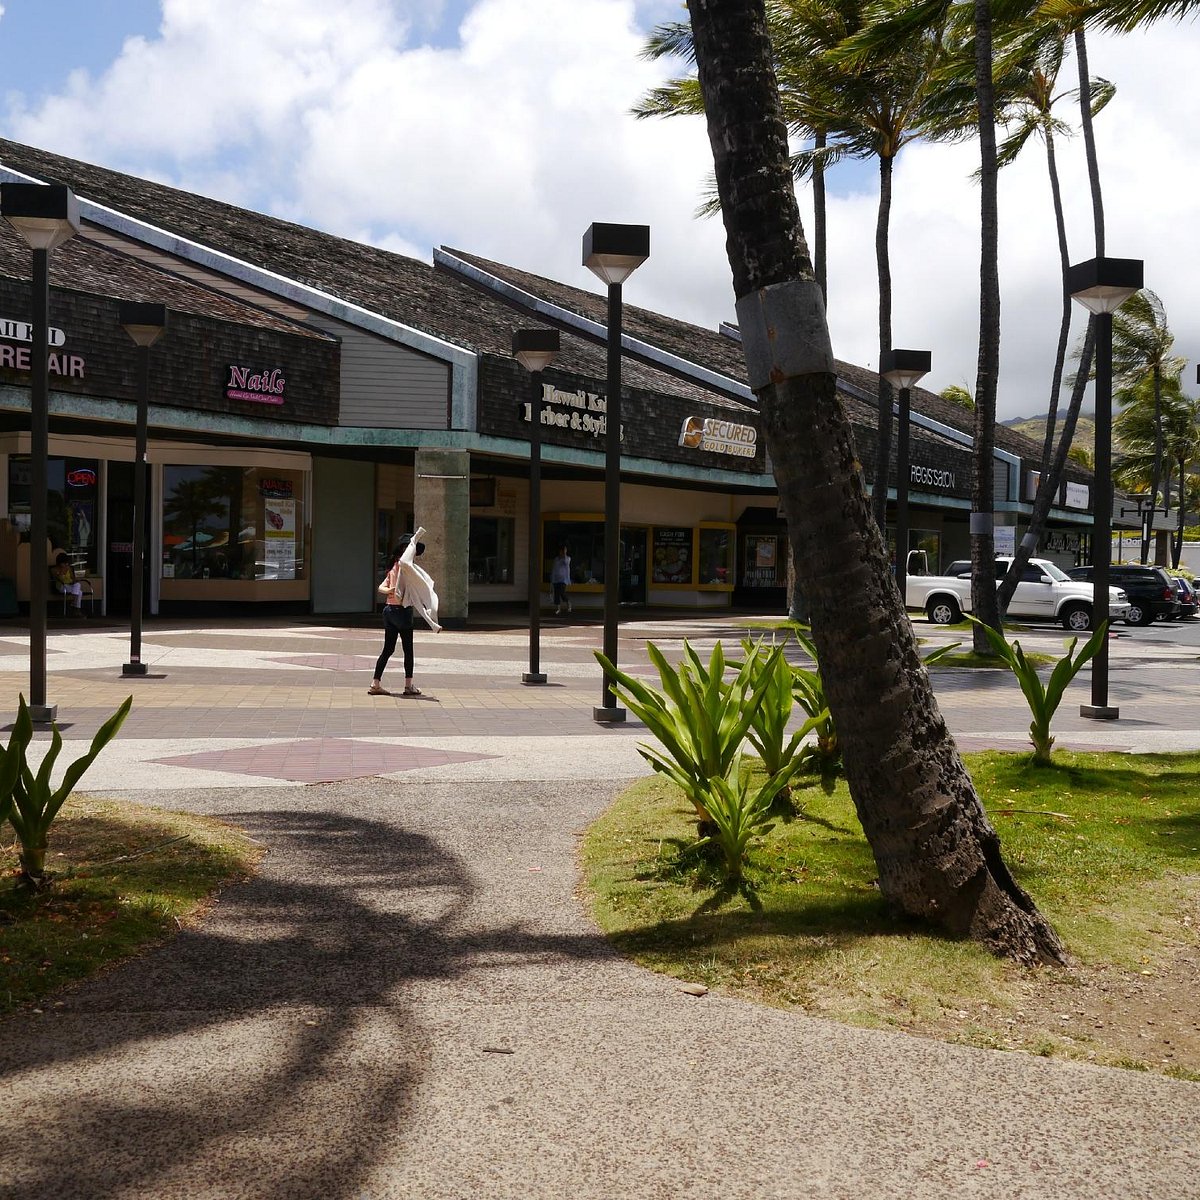 Культурный центр гонолулу 7. Гавайи торговый центр. Hawaii shop.